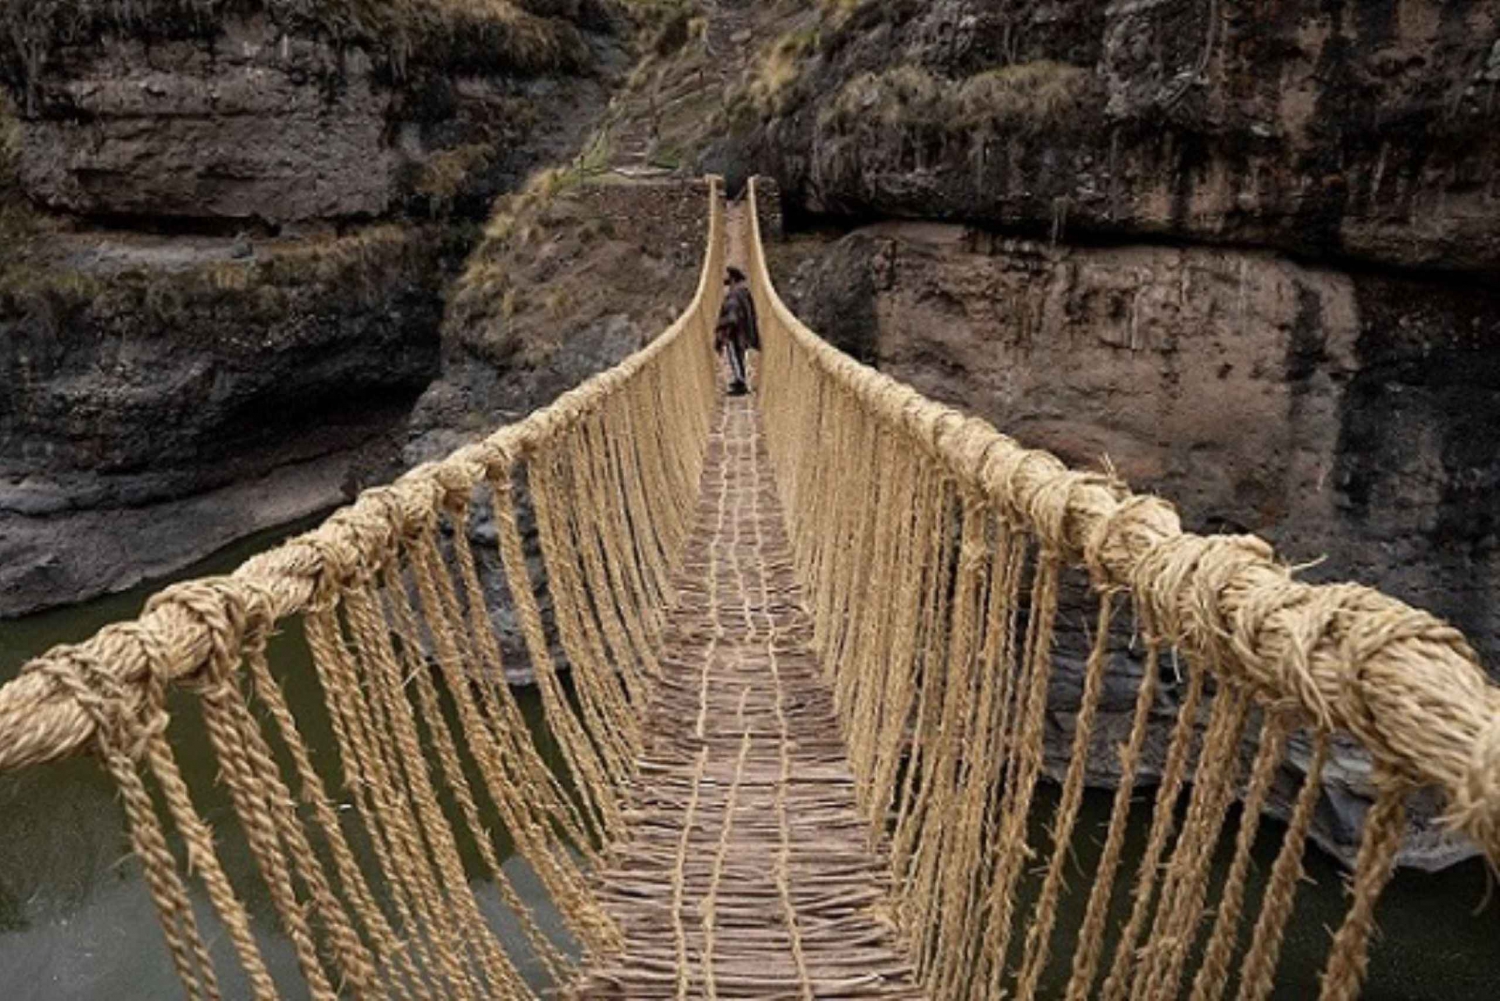 Qeswachaka Inka-Brücke die letzte erhaltene Inka-Brücke 1 Tag